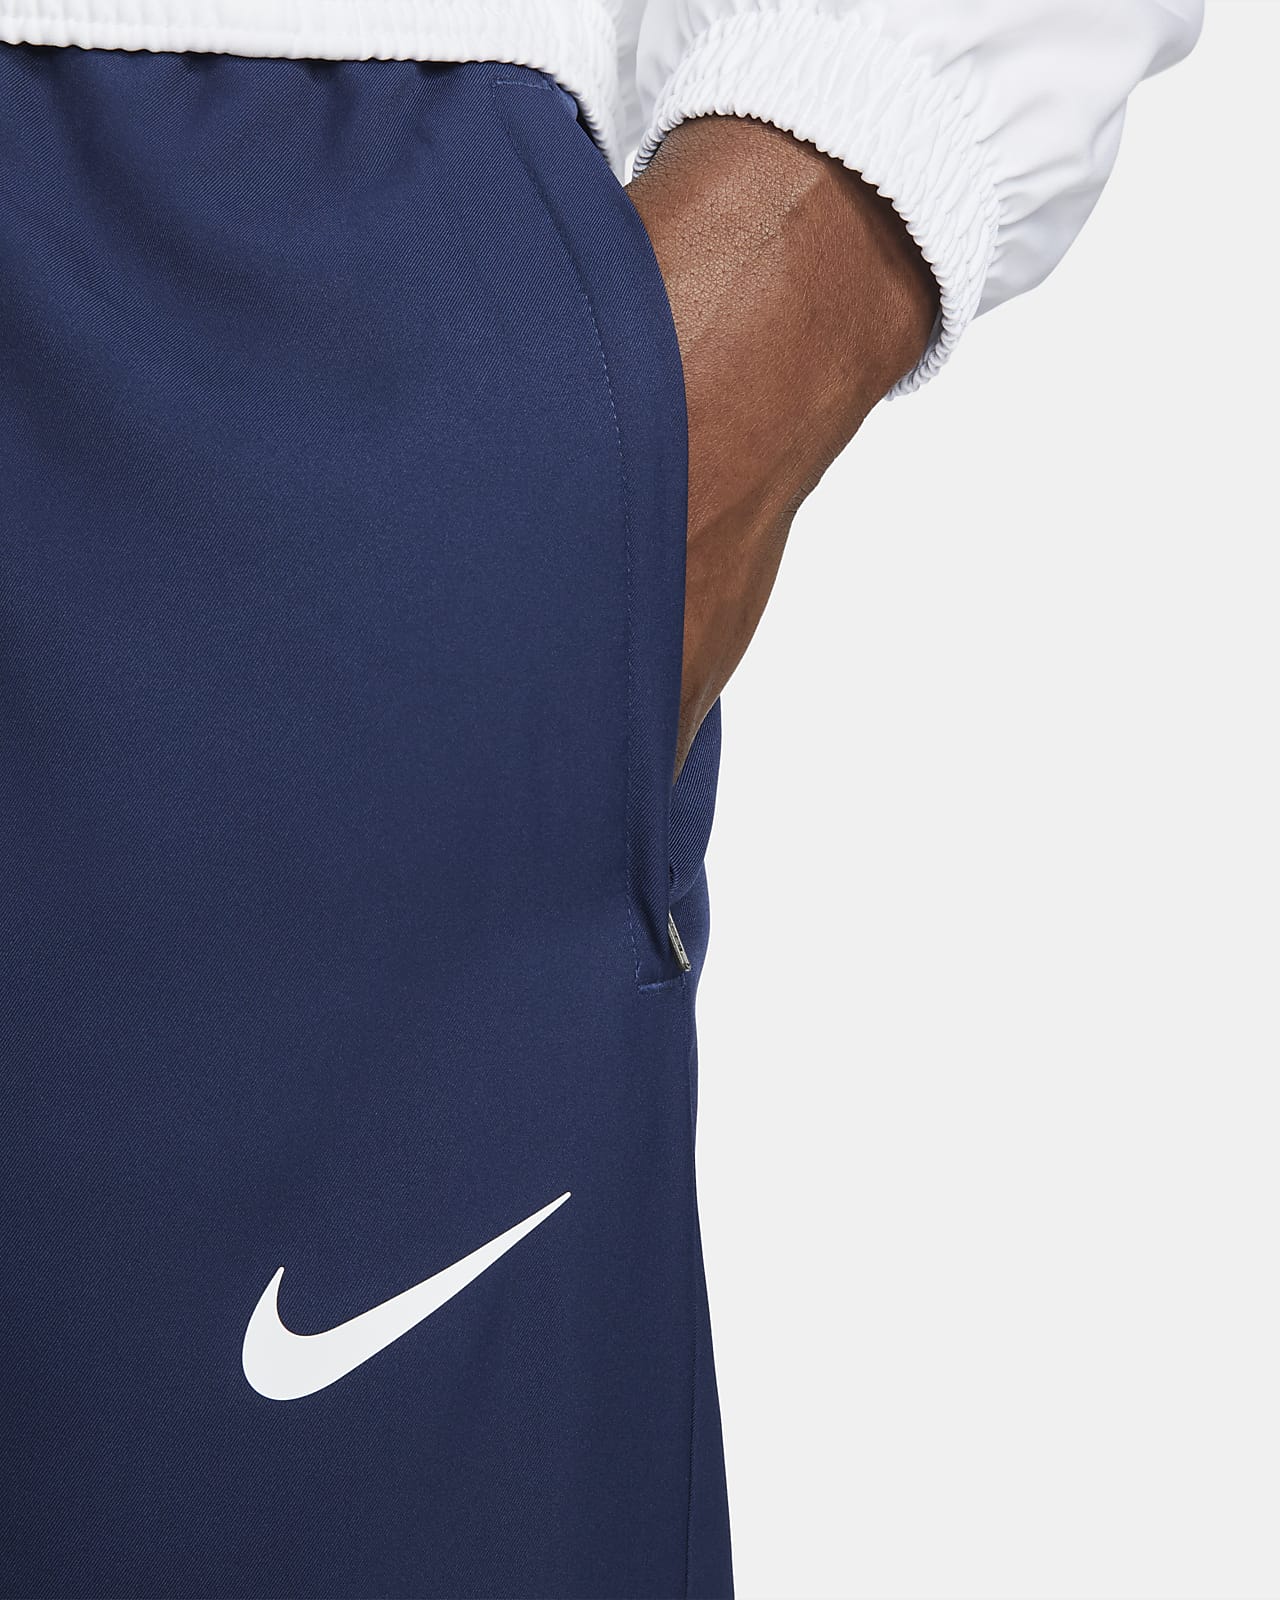 París Saint-Germain Chándal Nike Football - Hombre. Nike ES